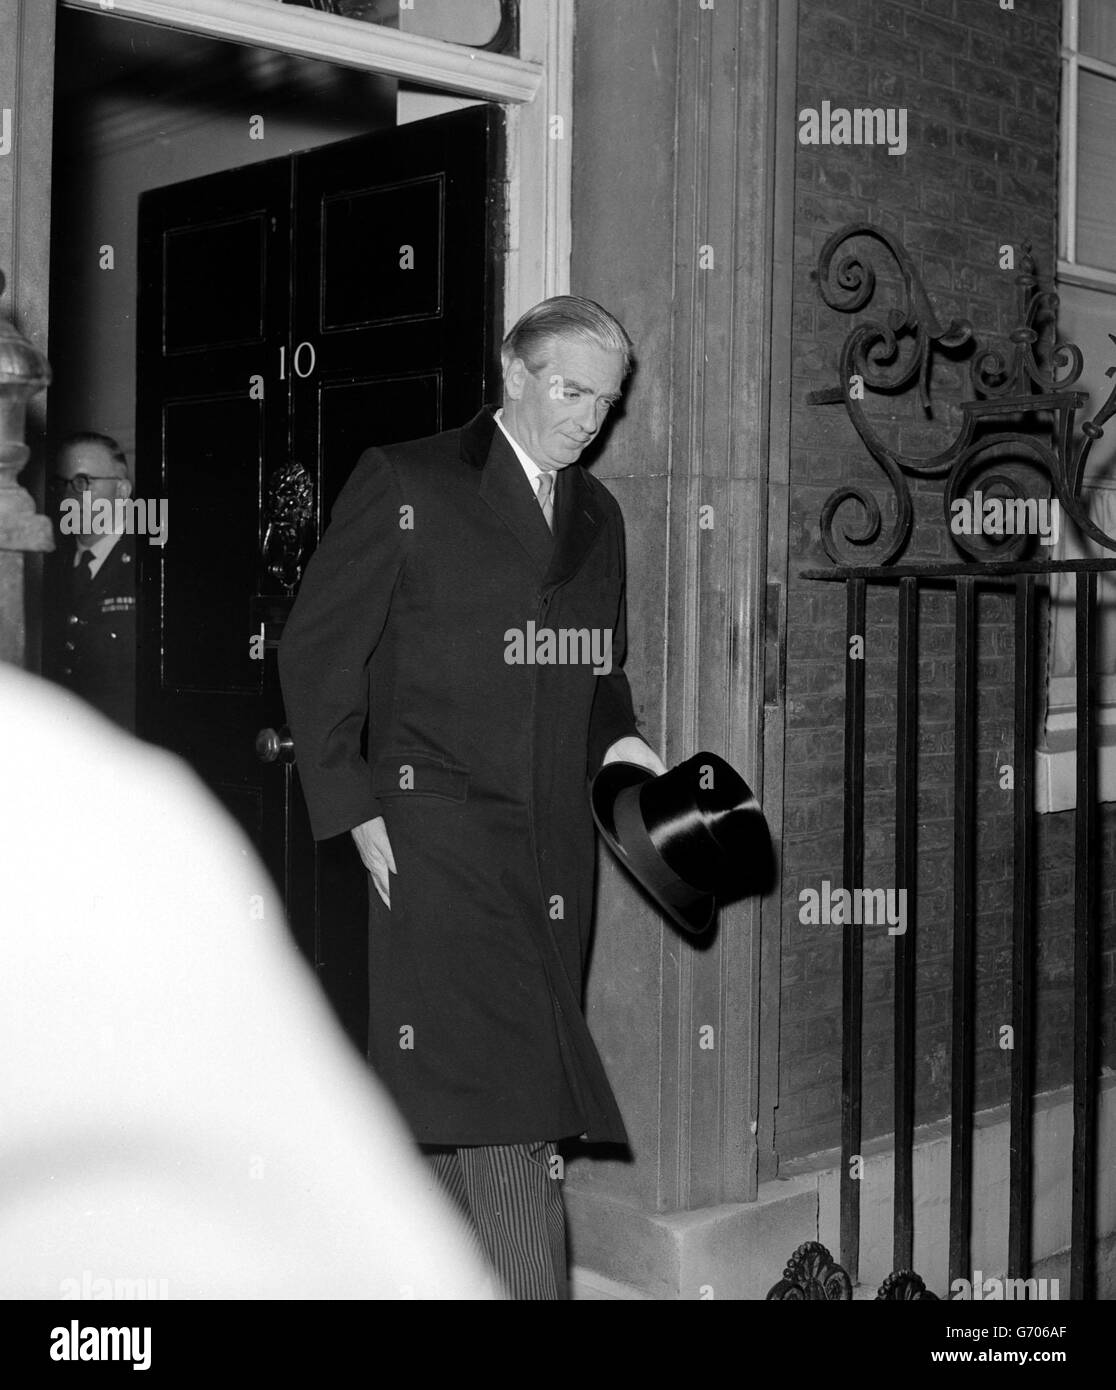 Le Premier ministre britannique Sir Anthony Eden (Lord Avon) quitte le 10 Downing Street pour présenter sa démission à la Reine au Palais de Buckingham. Banque D'Images